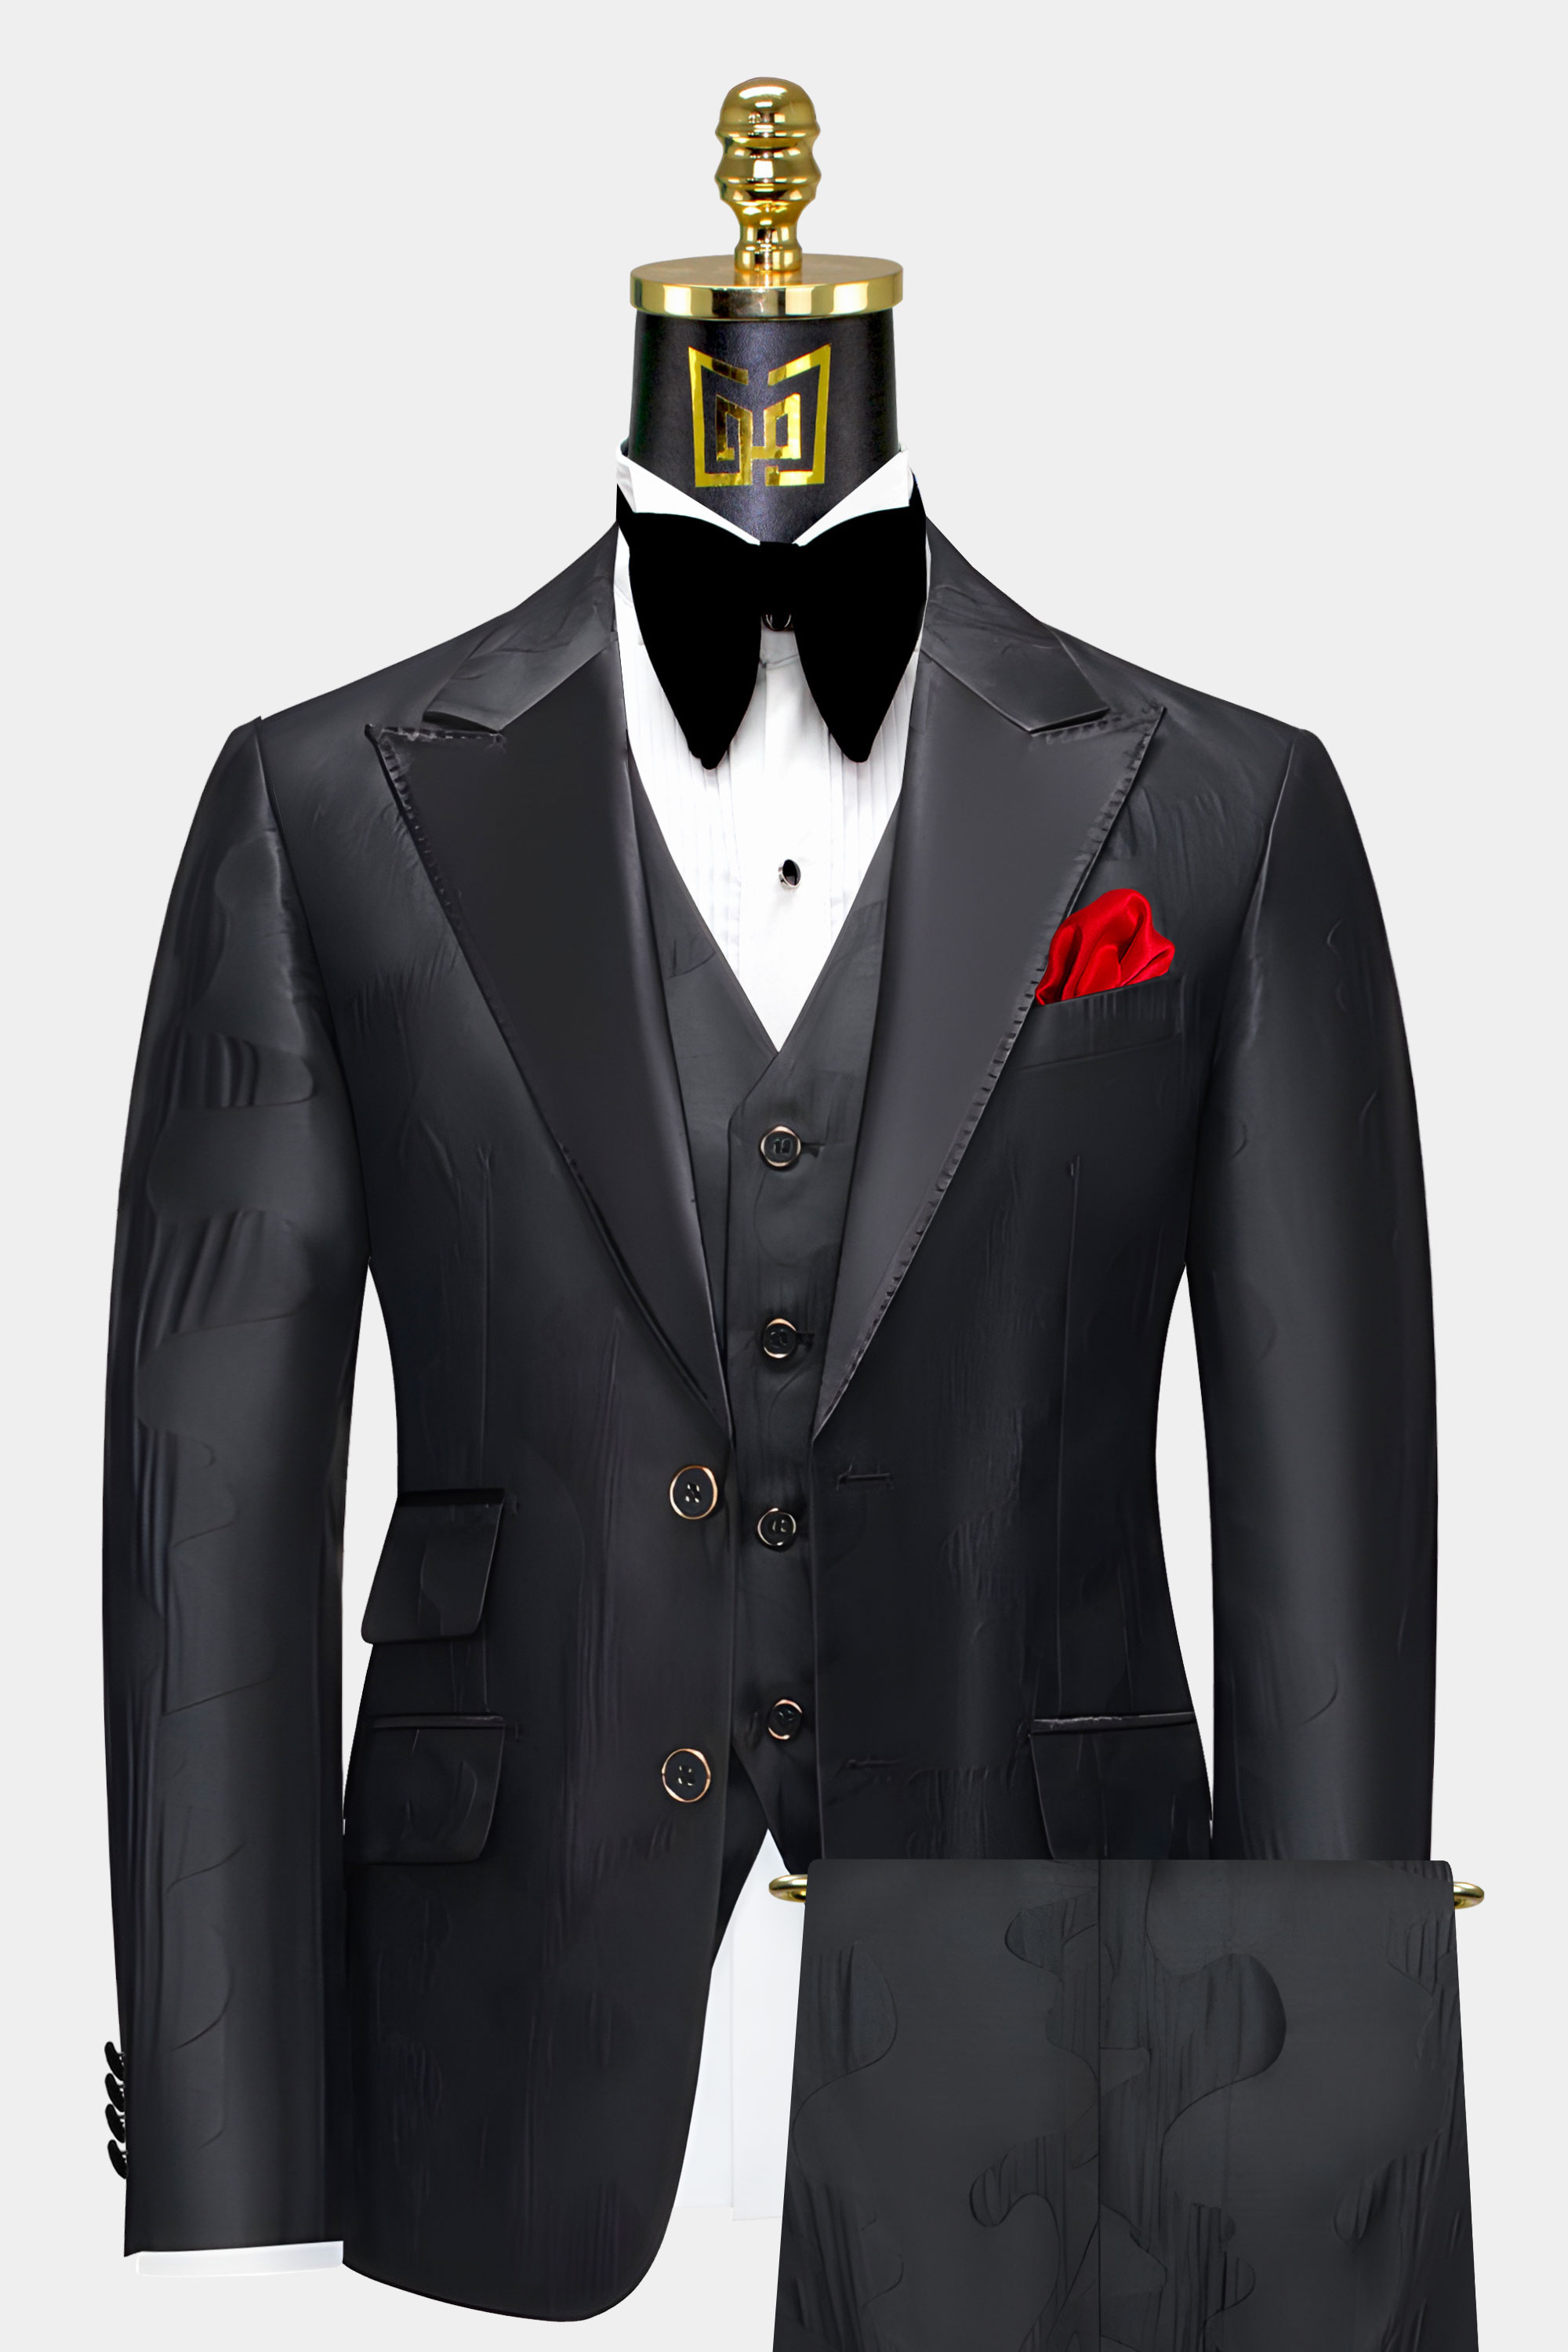 Black-Abstract-Tuxedo-Groom-Wedding-Prom-Suit-from-Gentlemansguru.com